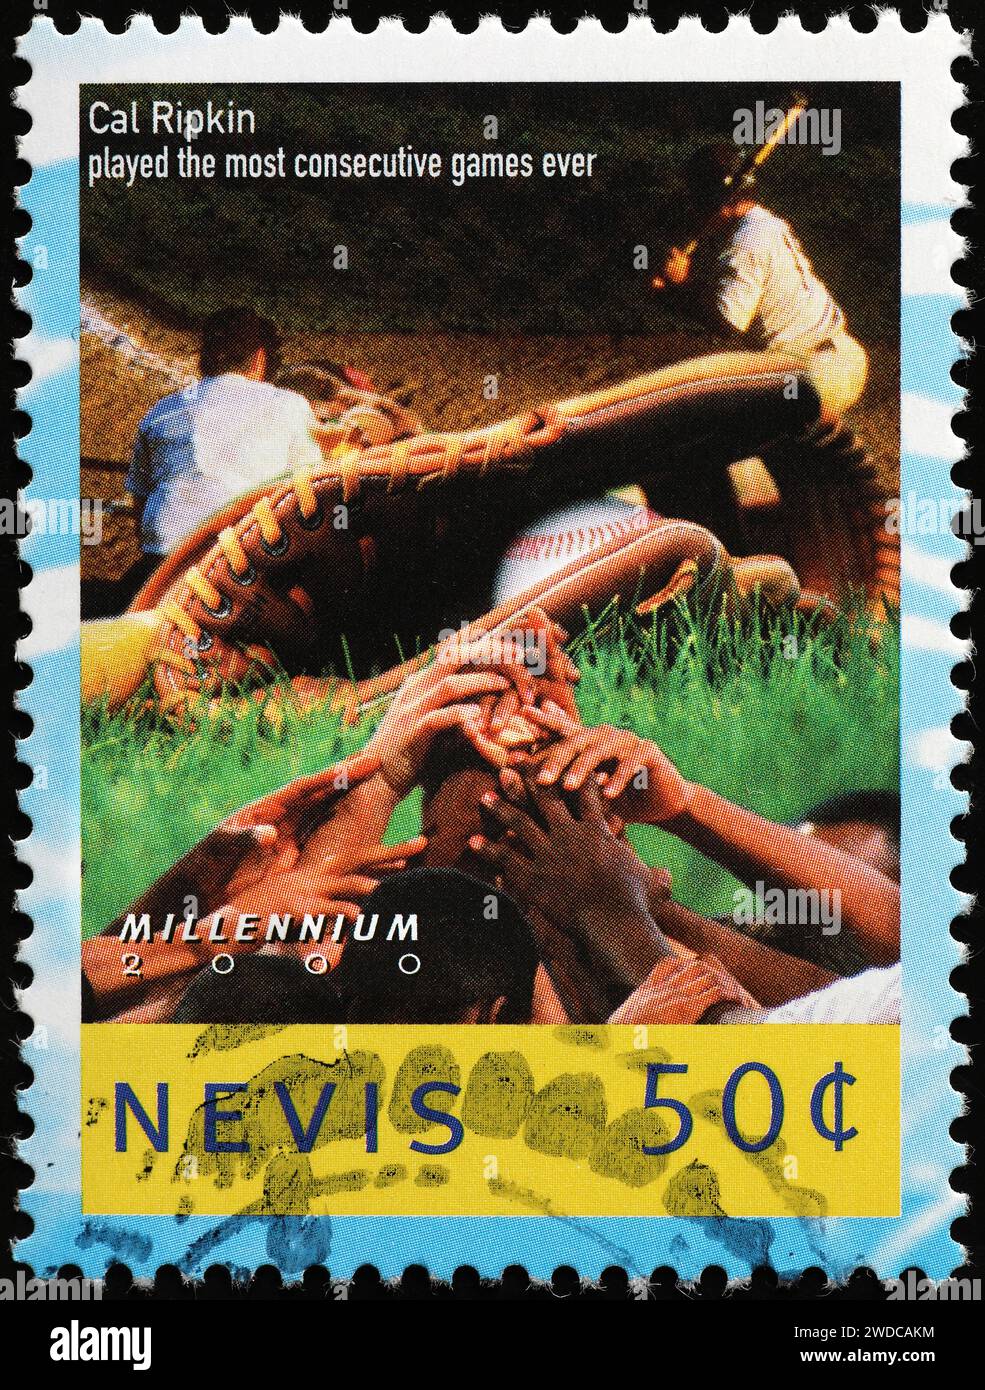 Il record di baseball Cal Ripkin ha festeggiato con il francobollo Foto Stock